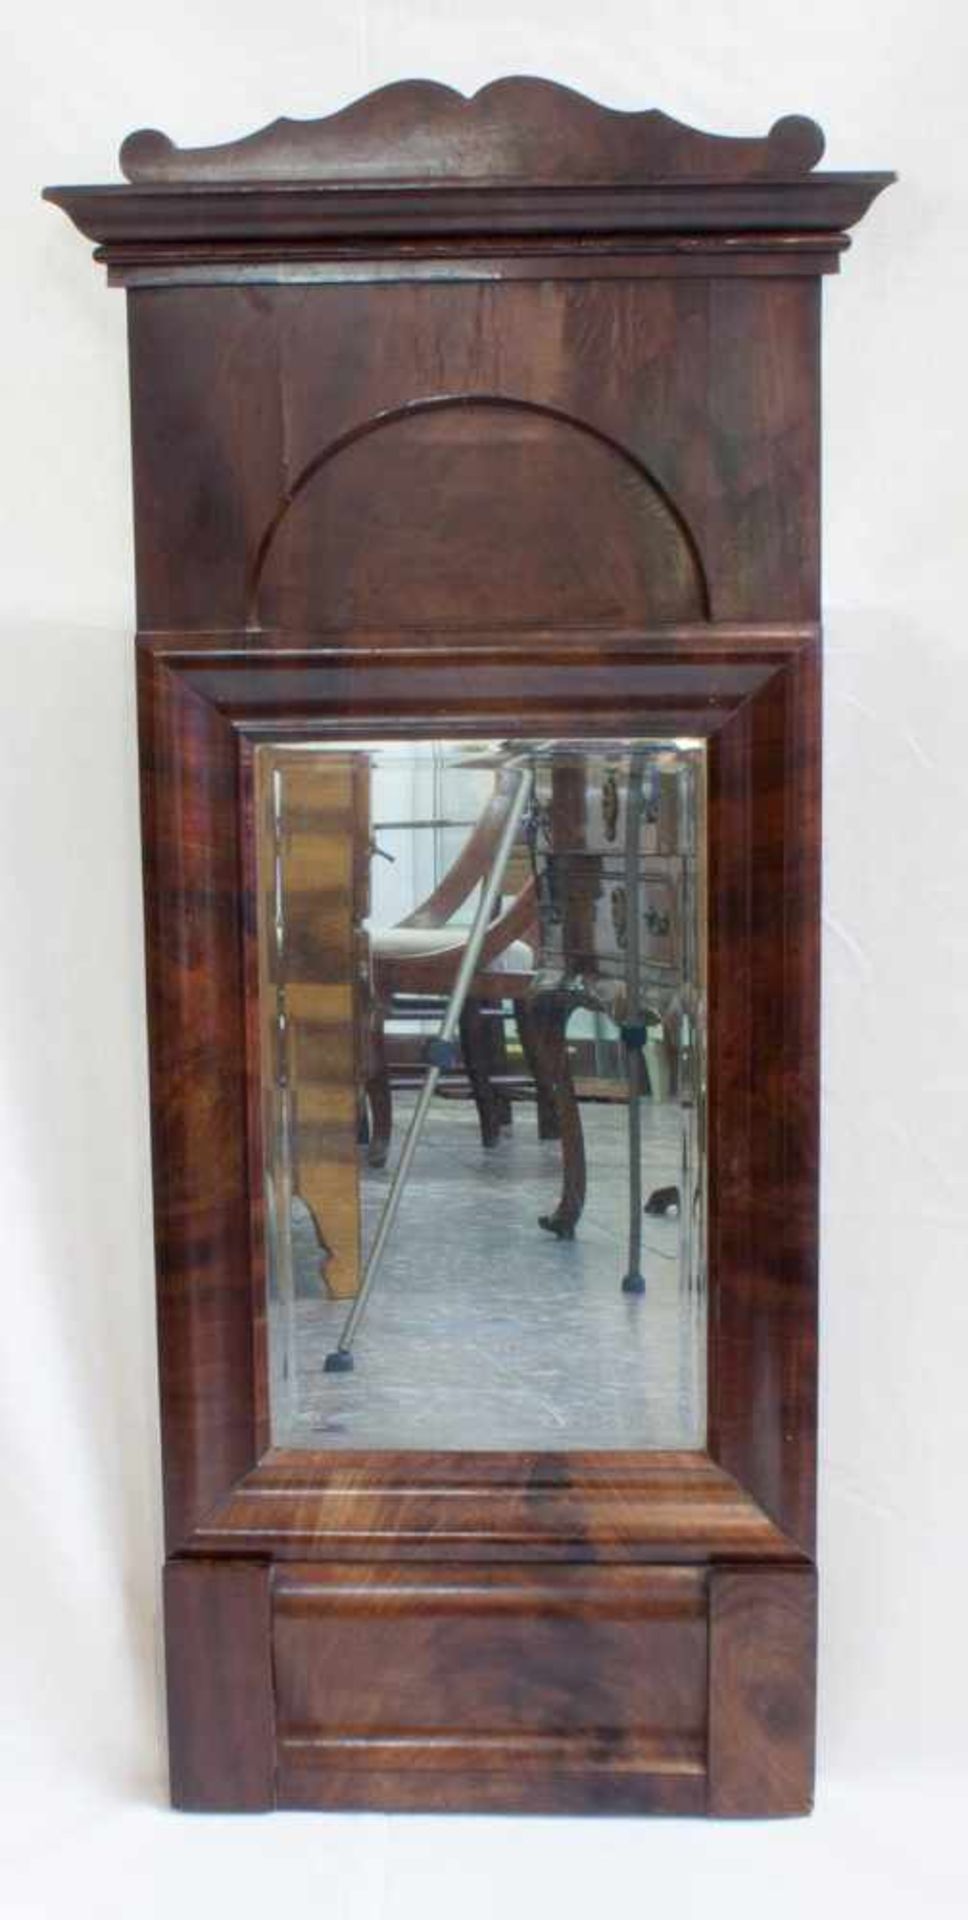 Biedermeier Spiegel um 1850, Nussbaum furniert, mit Aufsatz, geschliffenes Kristallglas, 50 x 110 cm